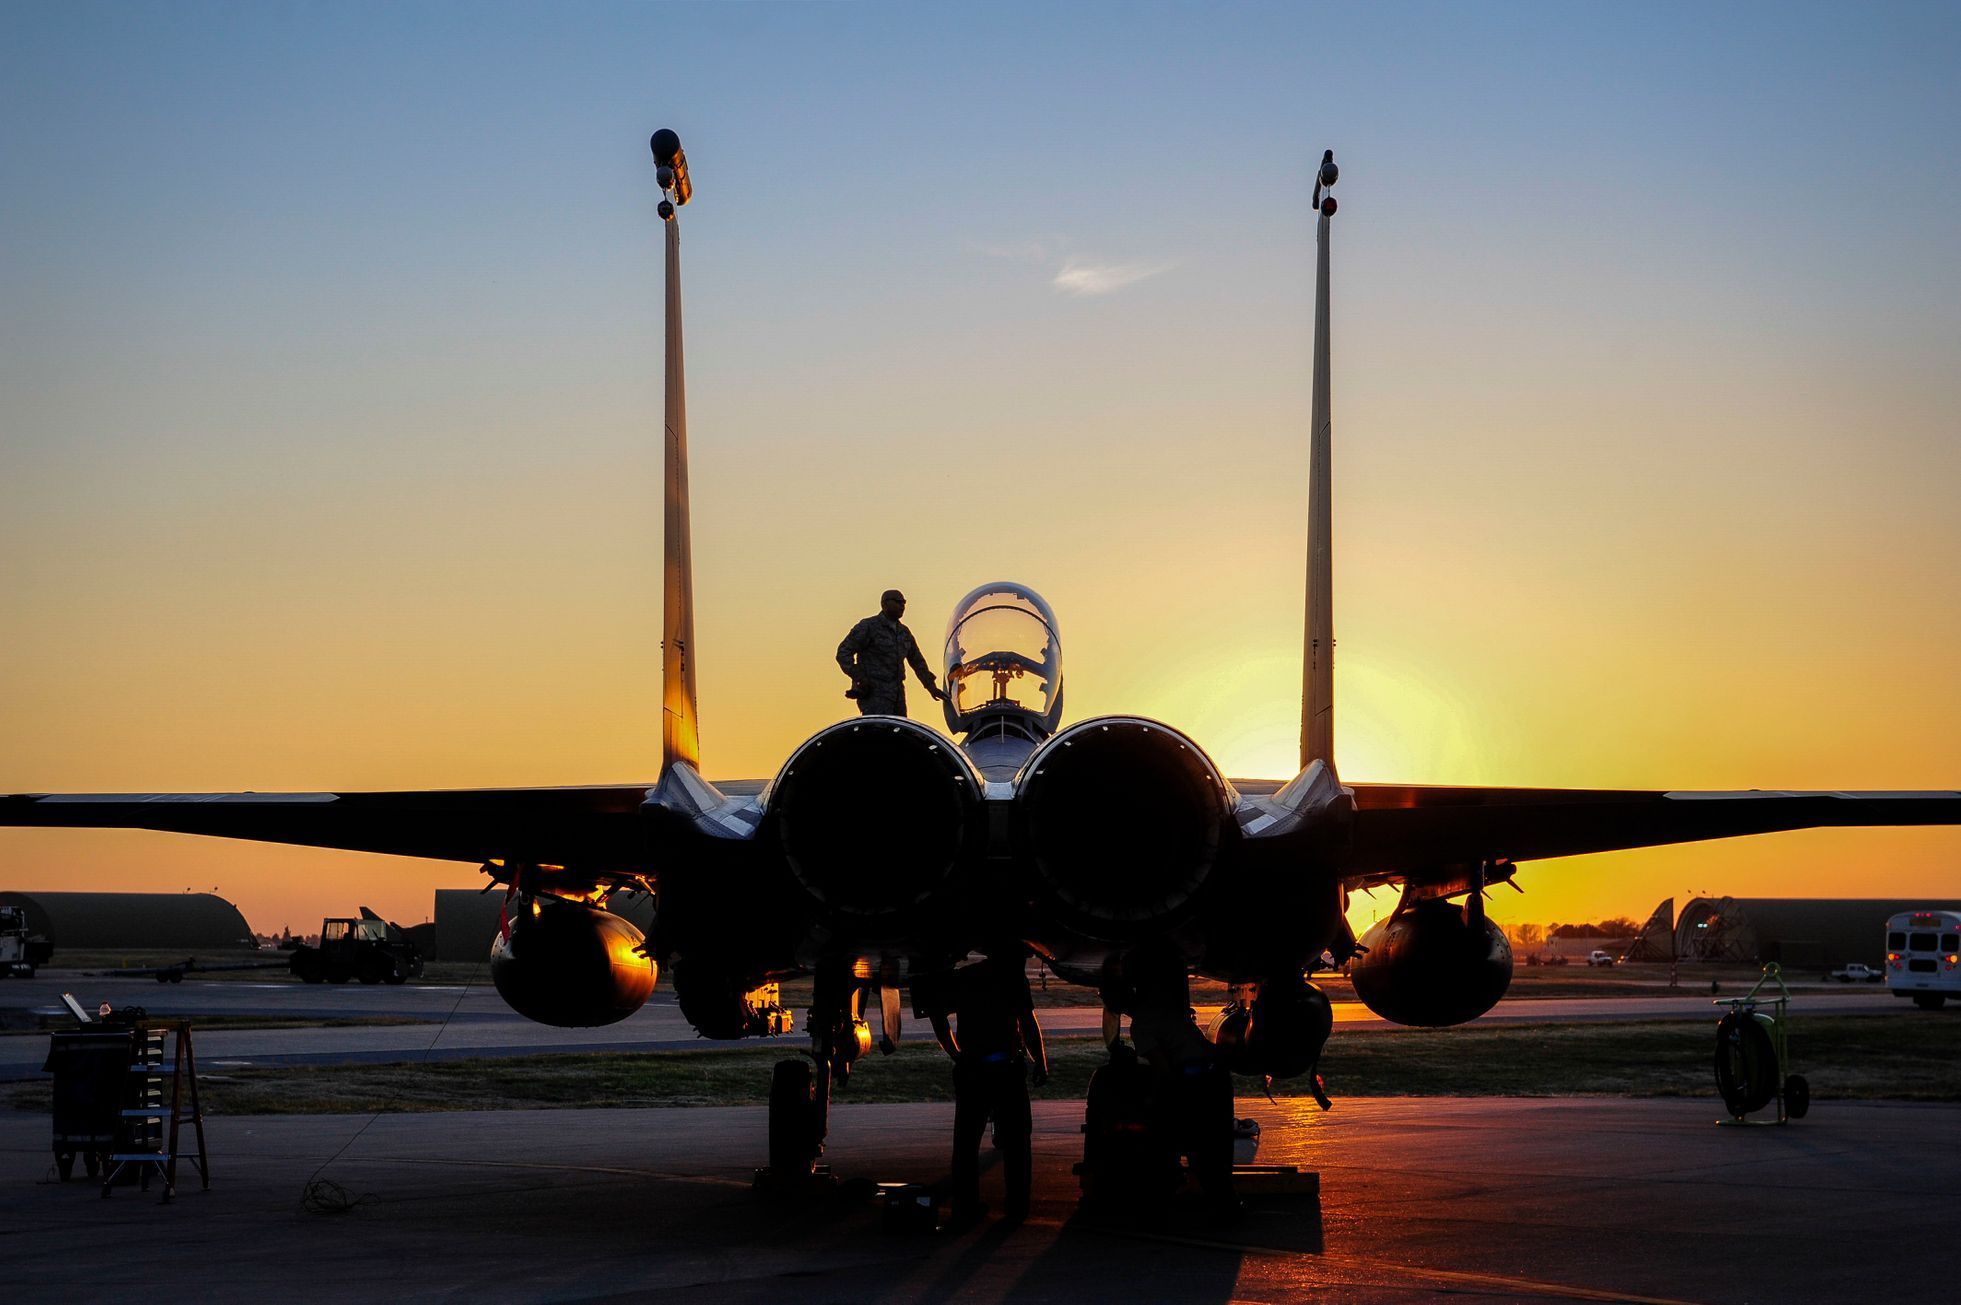 Letecká operace USA proti Islámskému státu